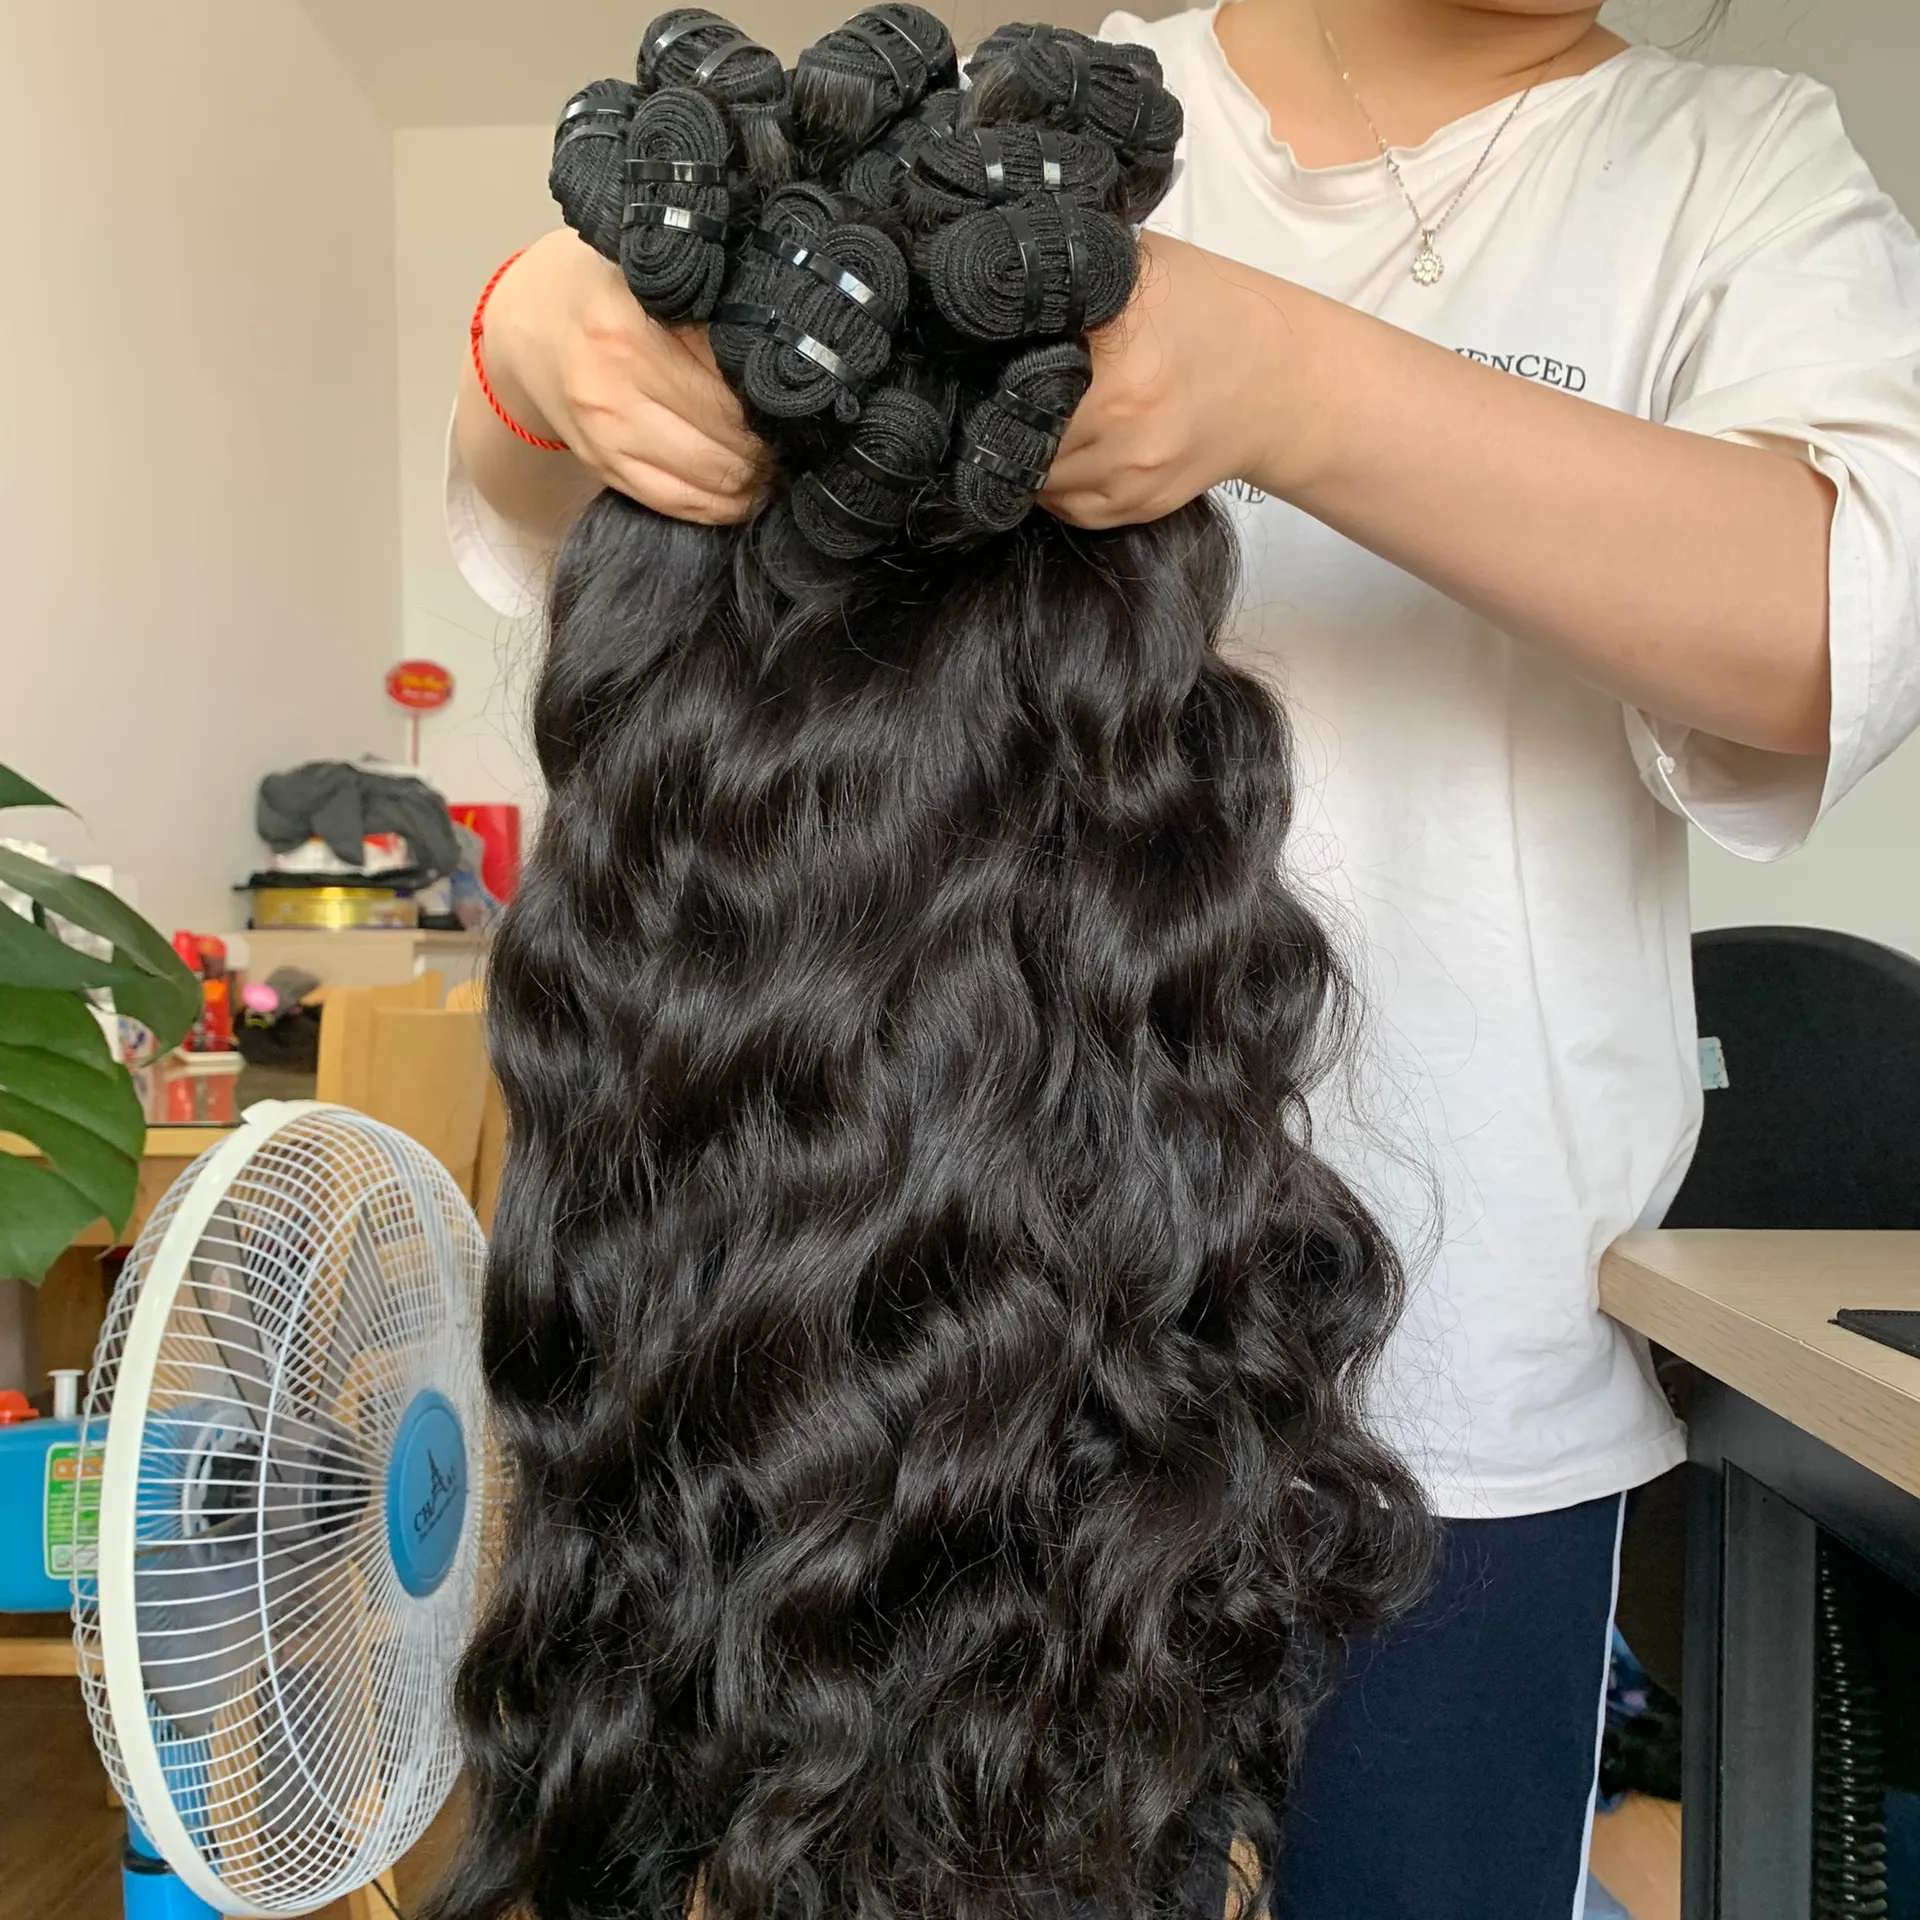 סיטונאי זול 100% וייטנאמי גלם שיער לא מעובד וייטנאמי טבעי גלי בתולה הארכת נמוך מחיר